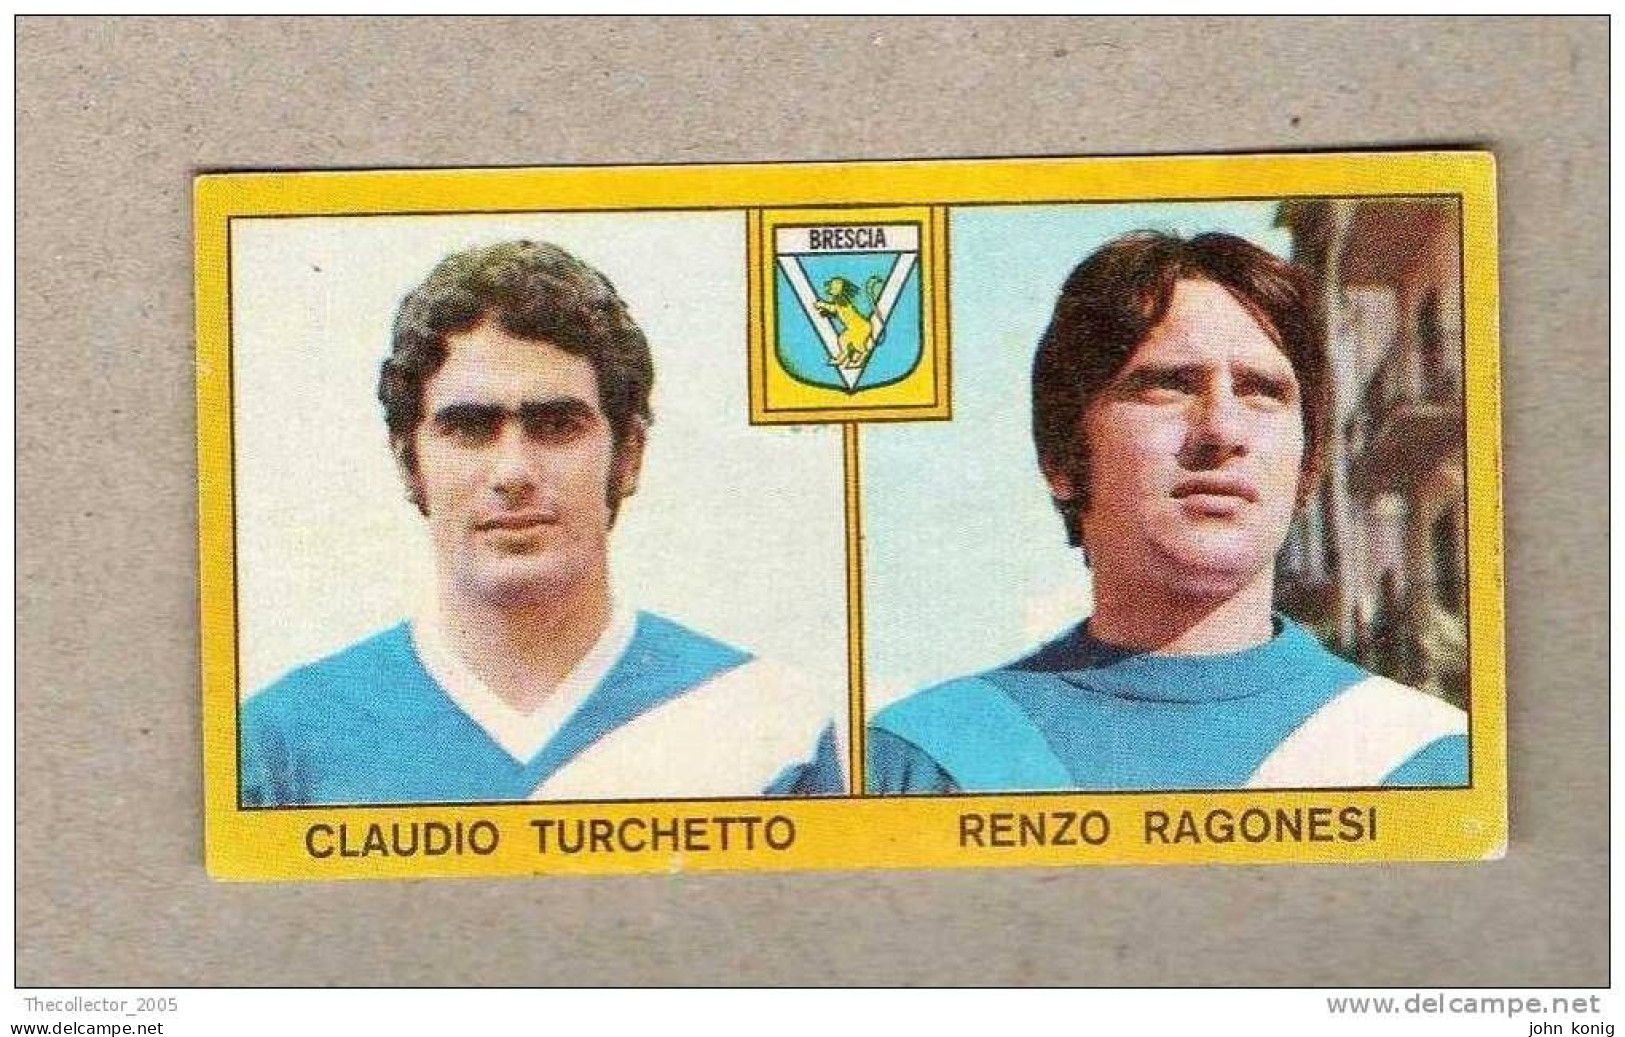 CALCIATORI - CALCIO - Figurine Panini 1969-1970 # Brescia (C. Turchetto-R. Ragonesi) - Italian Edition